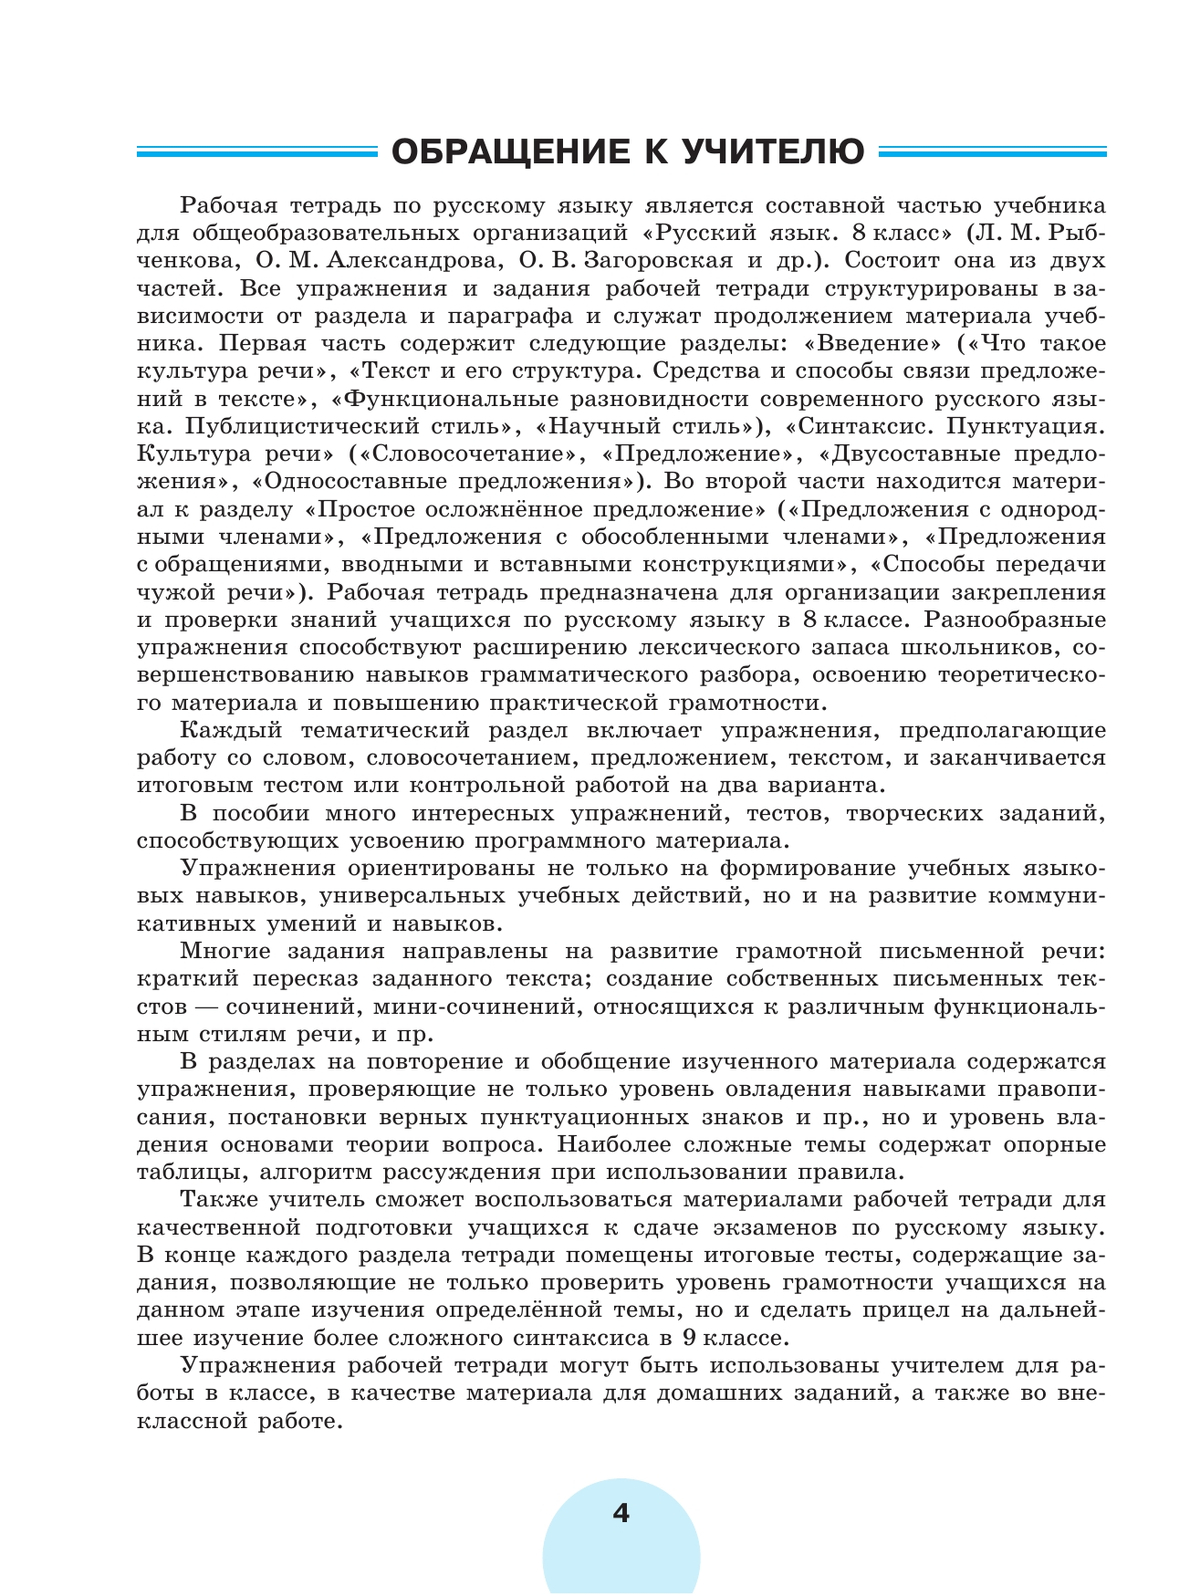 Русский язык. Рабочая тетрадь. 8 класс. В 2 ч. Часть 1 3